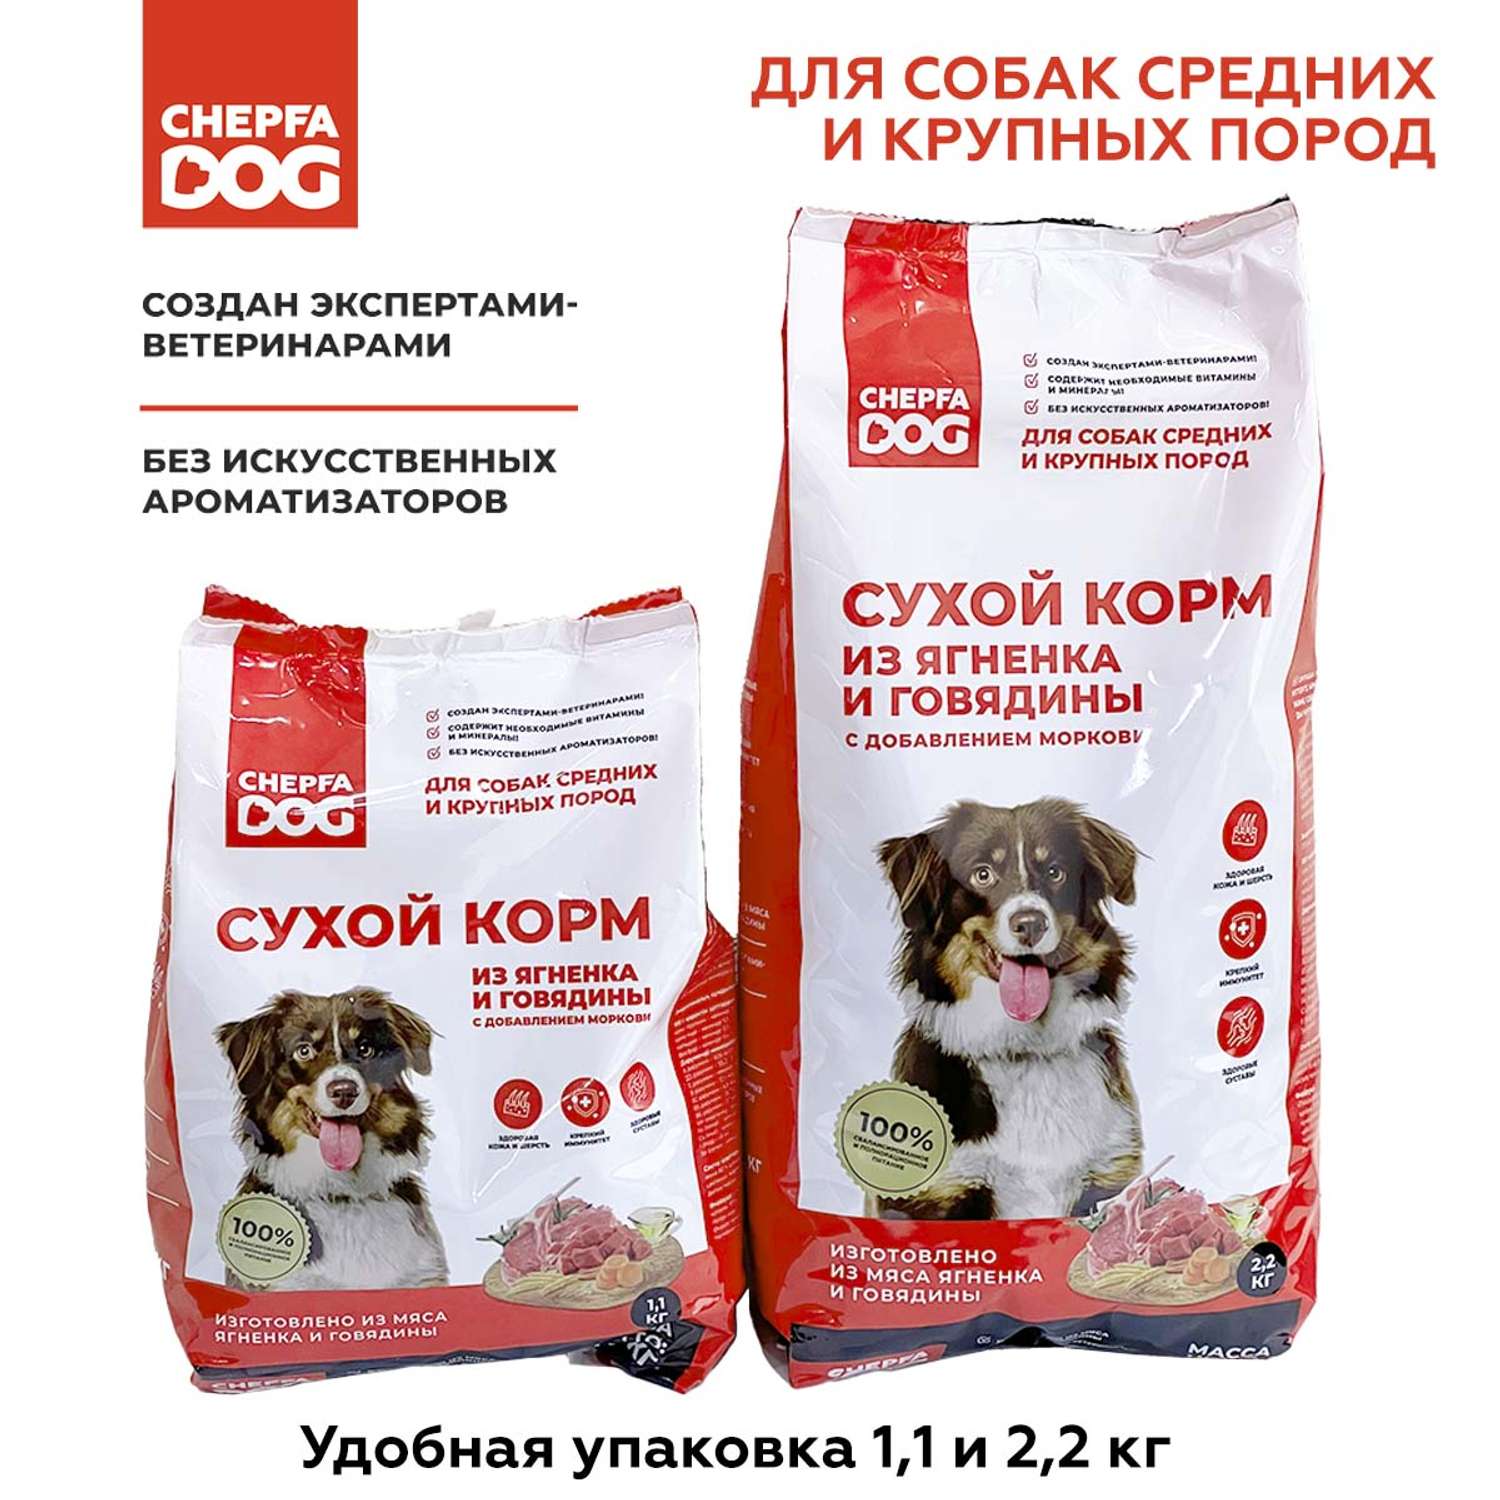 Сухой корм для собак Chepfa Dog Полнорационный ягненок и говядина 2.2 кг для взрослых собак средних и крупных пород - фото 7